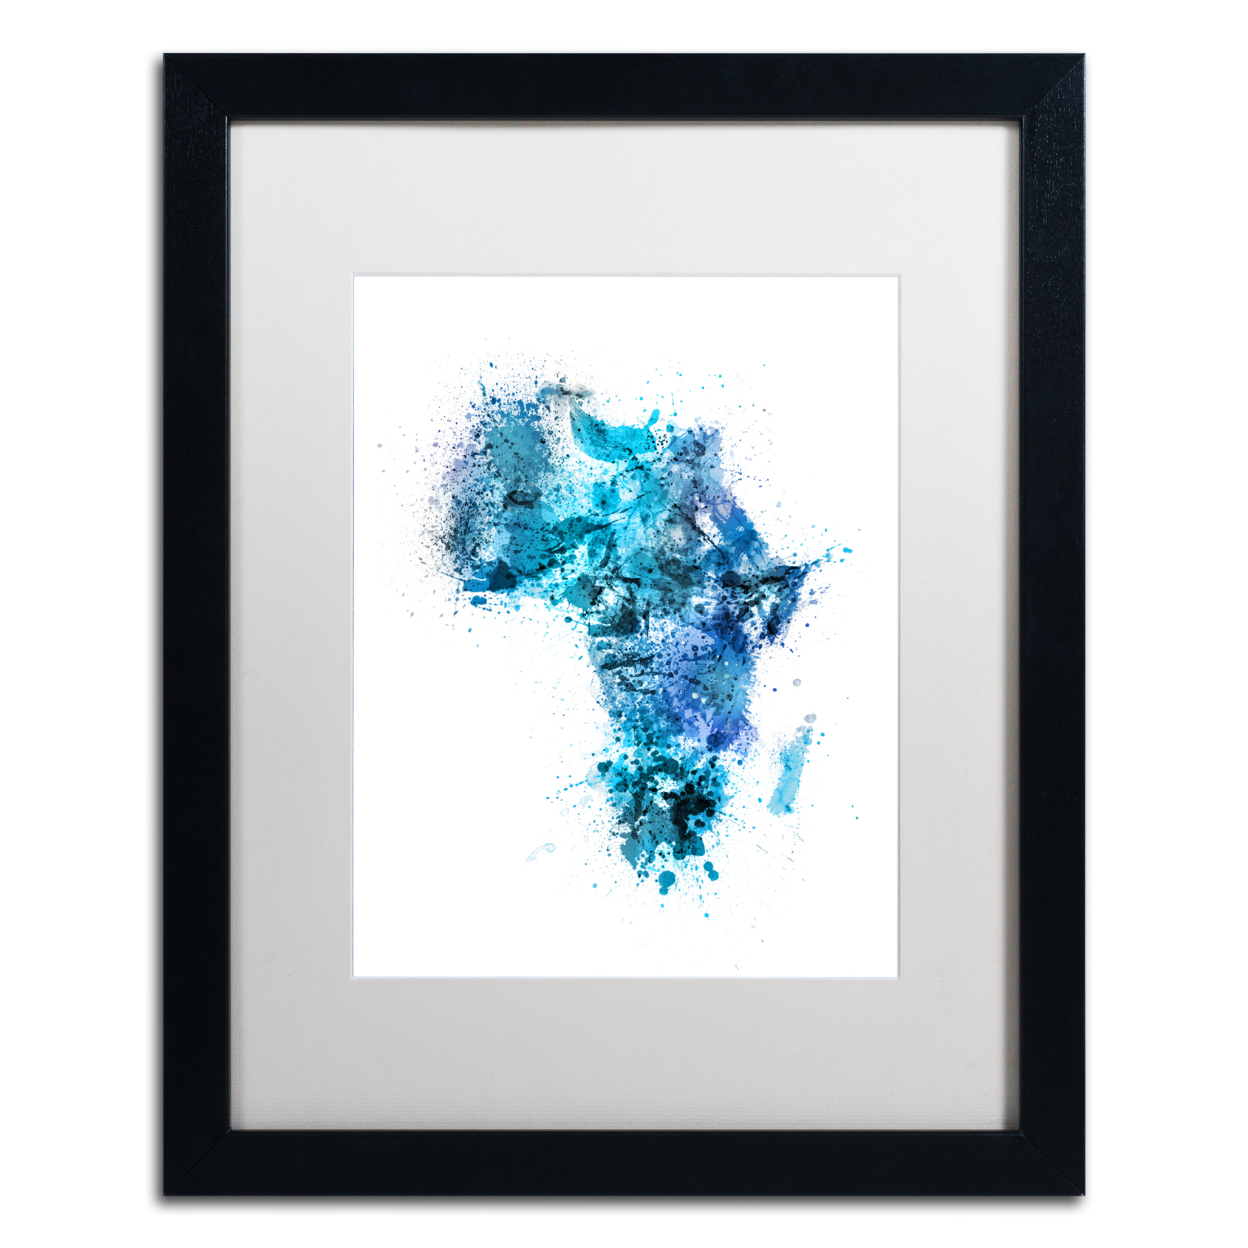 Michael Tompsett 'Paint Splashes Map Of Africa' Black Wooden Framed Art 18 X 22 Inches